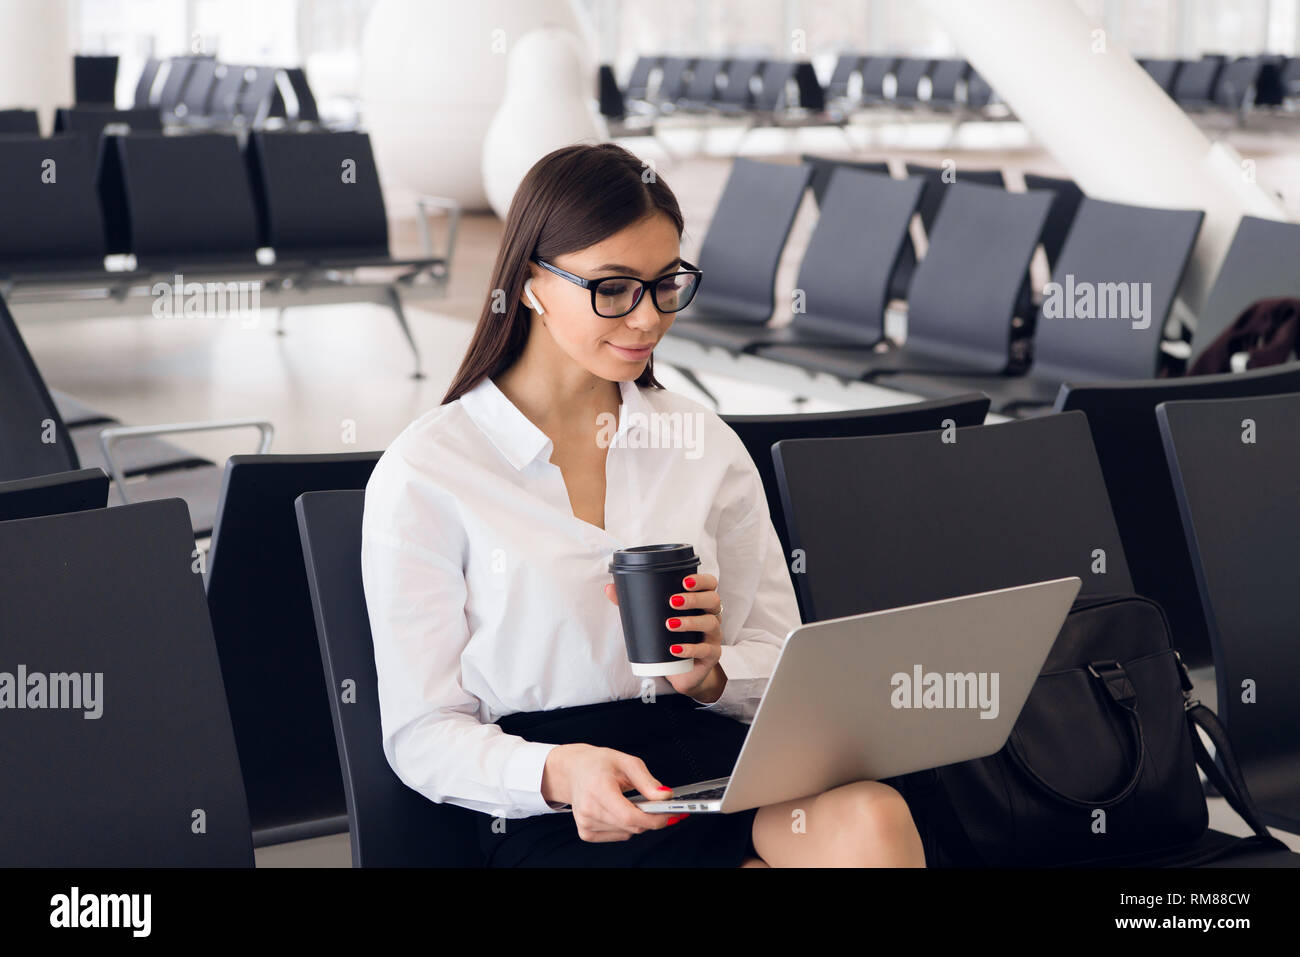 Jeune femme d'affaires élégante dans international airport terminal, travaillant sur son ordinateur portable lors de l'attente pour le vol Banque D'Images